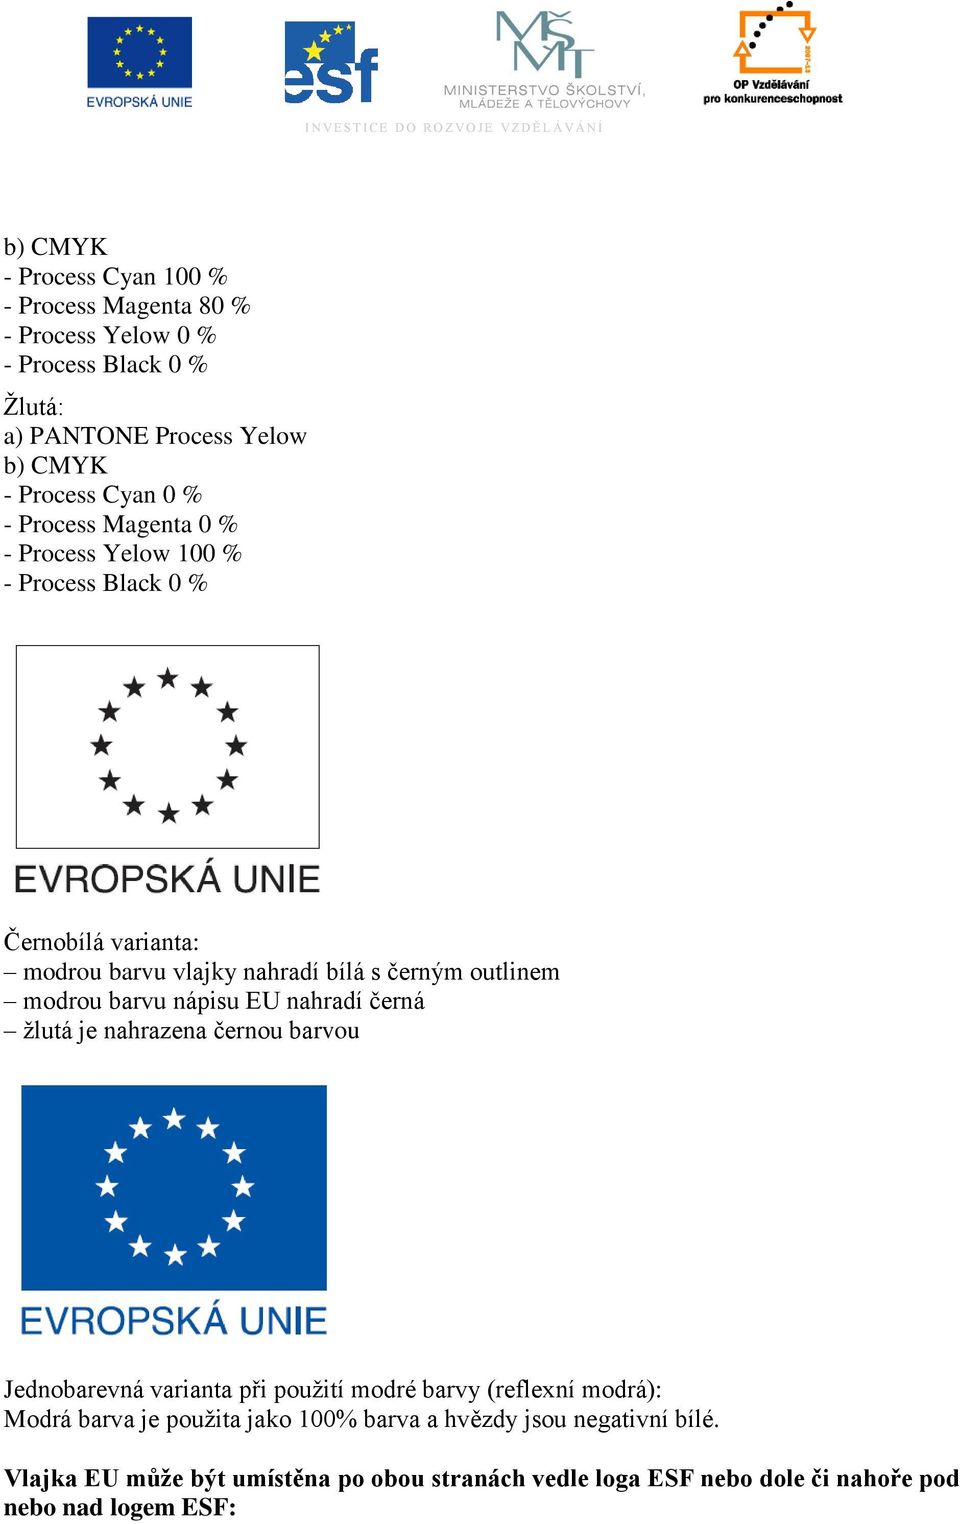 barvu nápisu EU nahradí černá ţlutá je nahrazena černou barvou Jednobarevná varianta při pouţití modré barvy (reflexní modrá): Modrá barva je